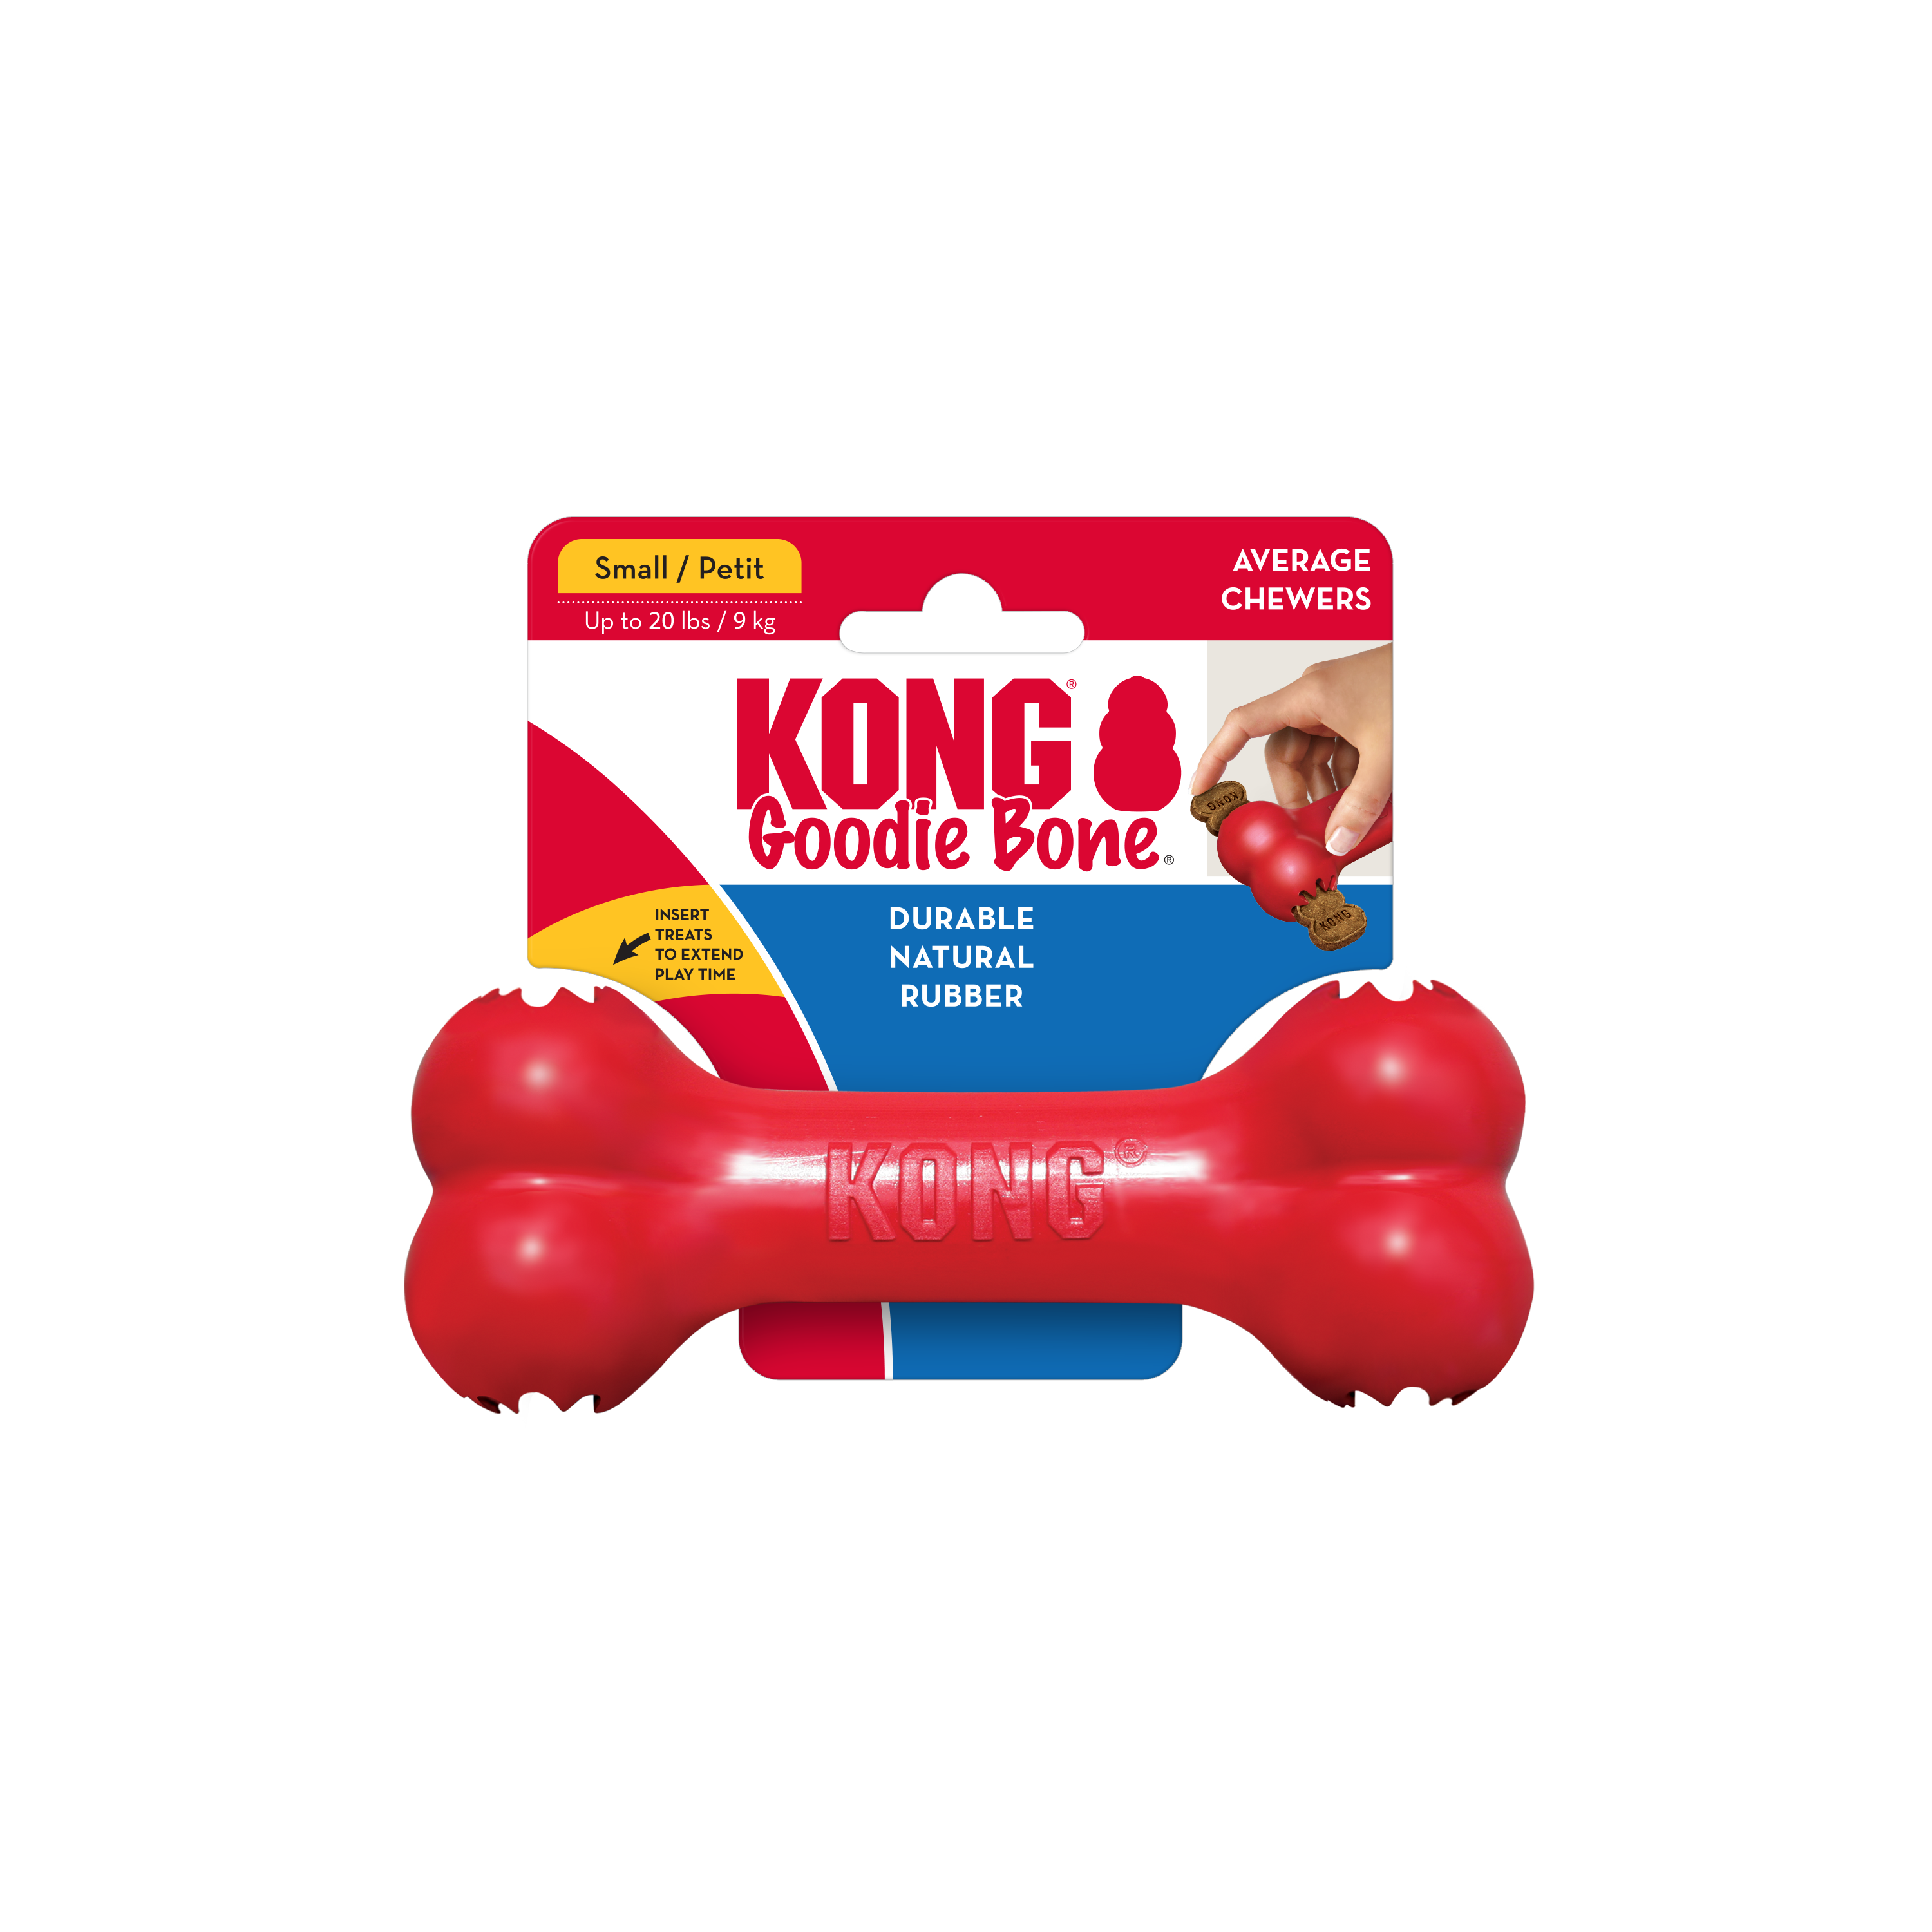 Imagem do produto KONG Goodie Bone na embalagem